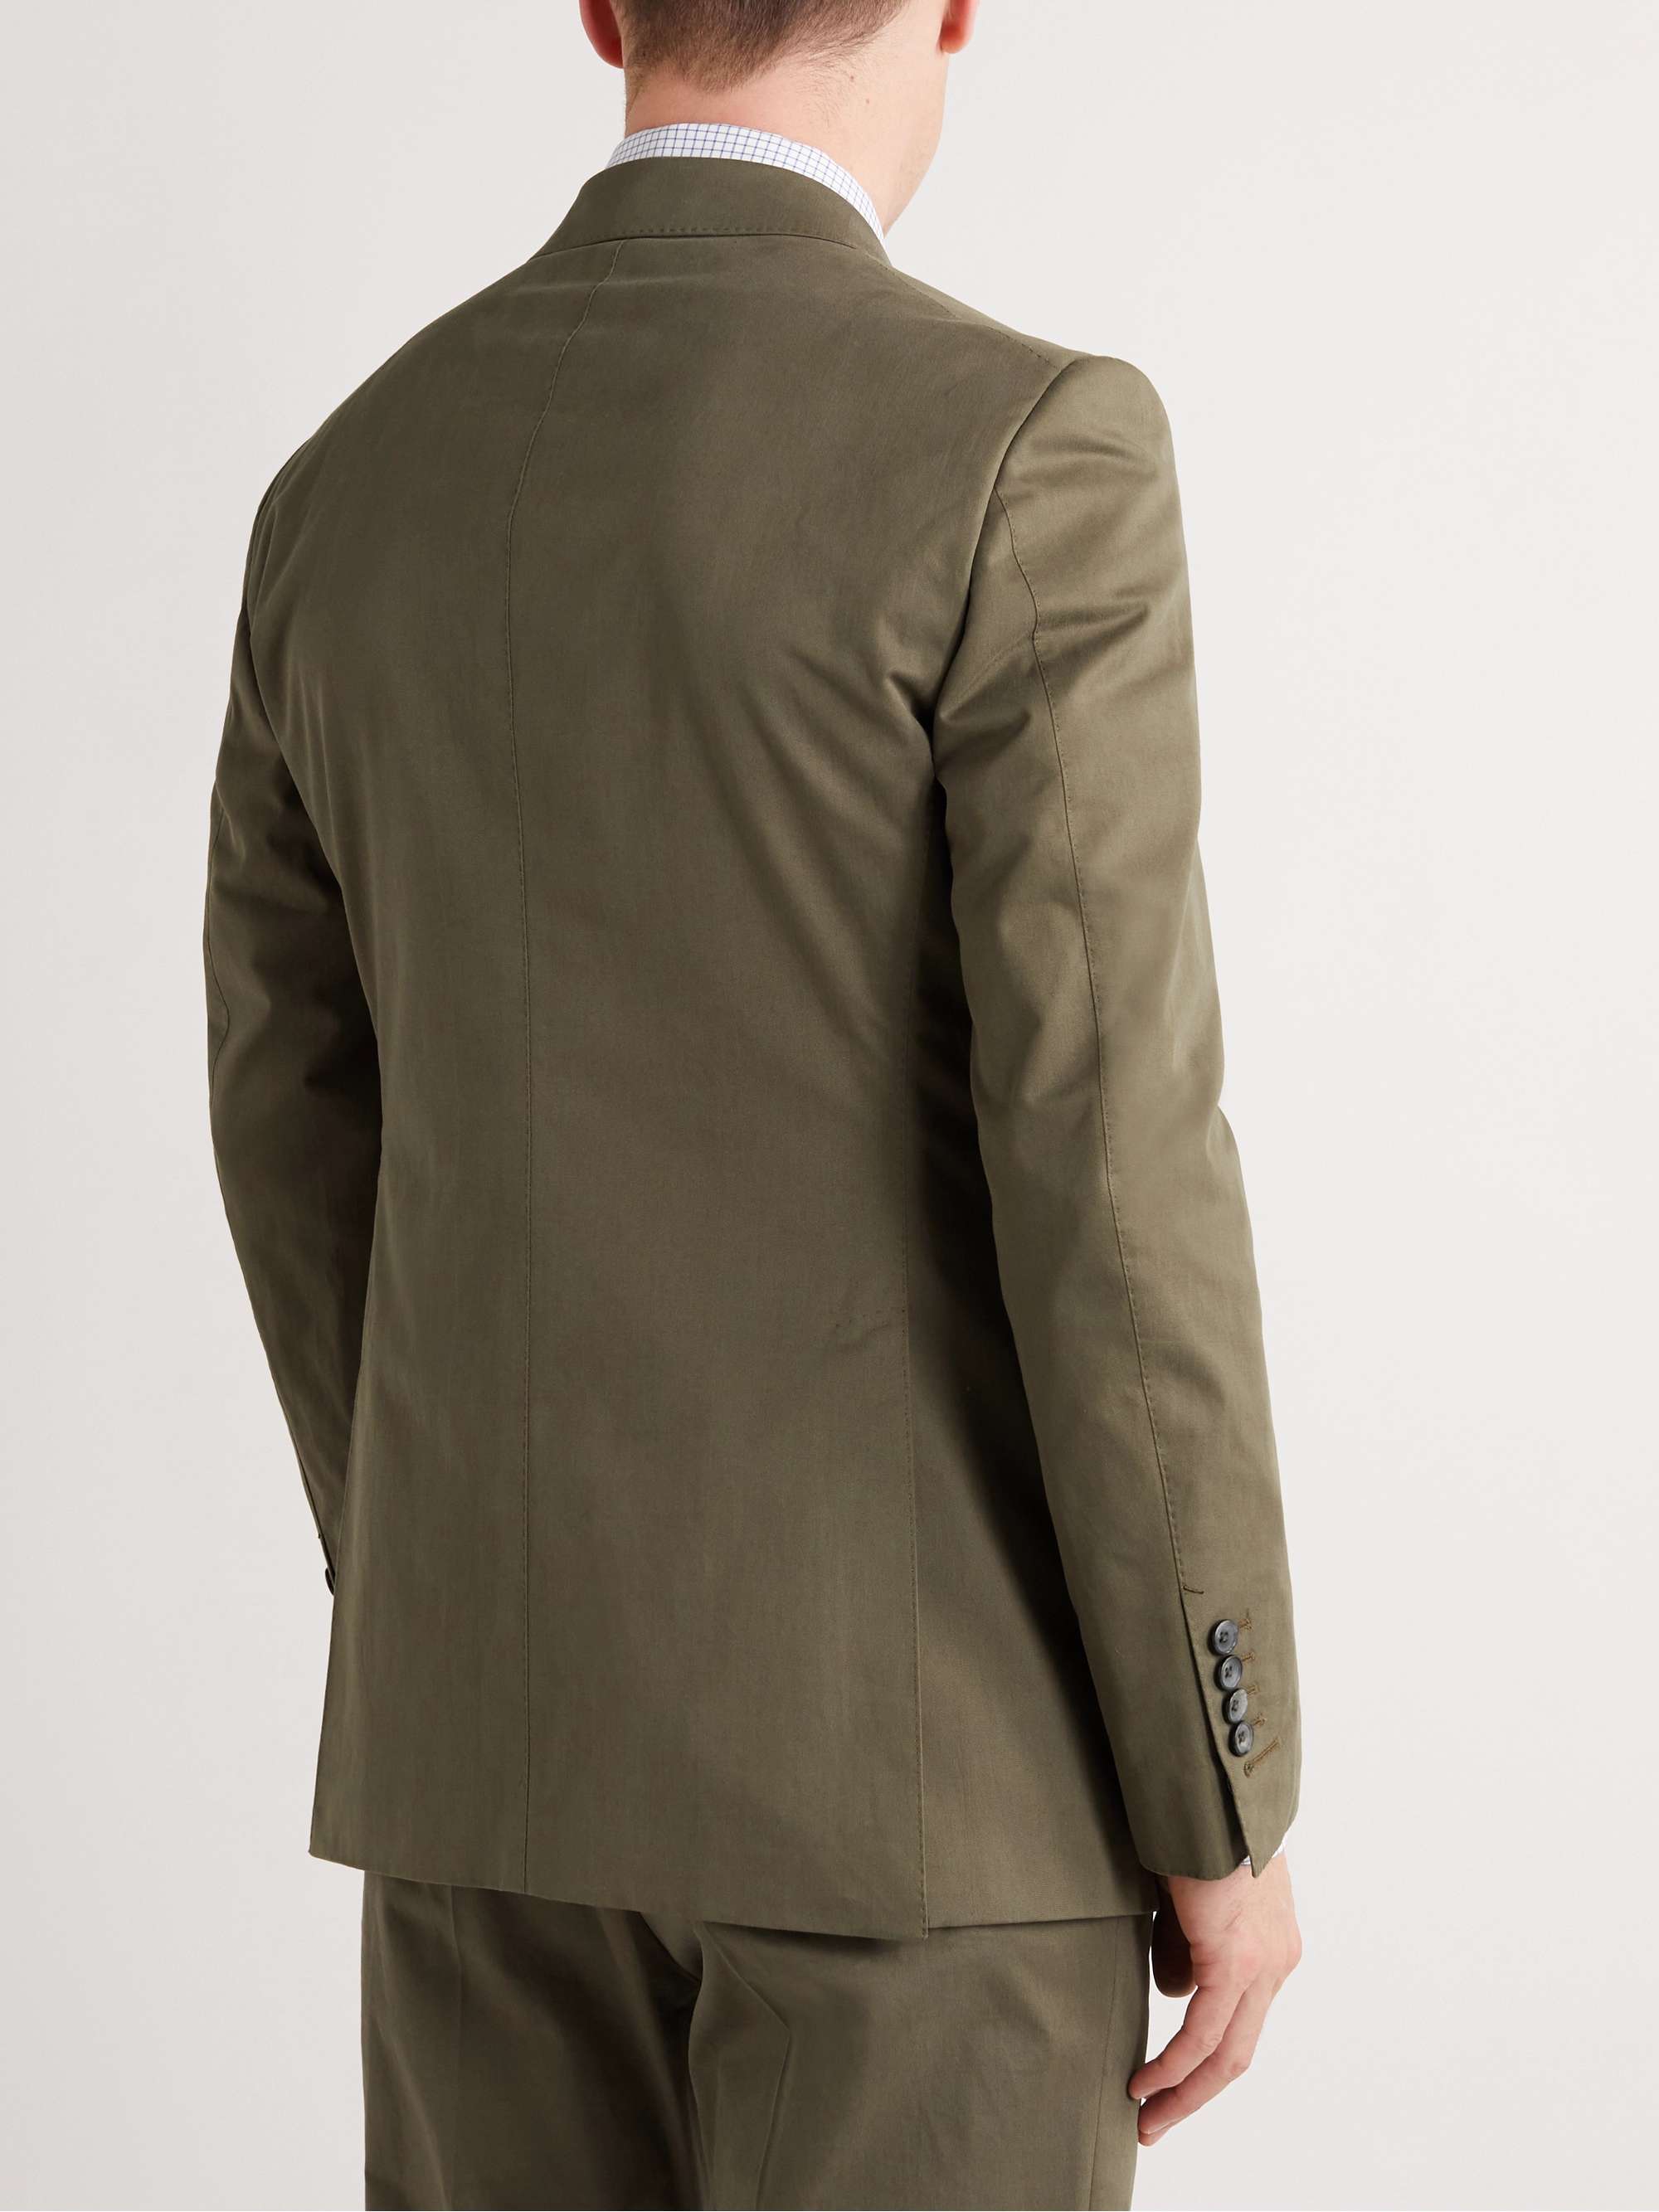 TOM FORD Shelton Slim-Fit Cotton-Blend Twill Suit Jacket for Men | MR ...